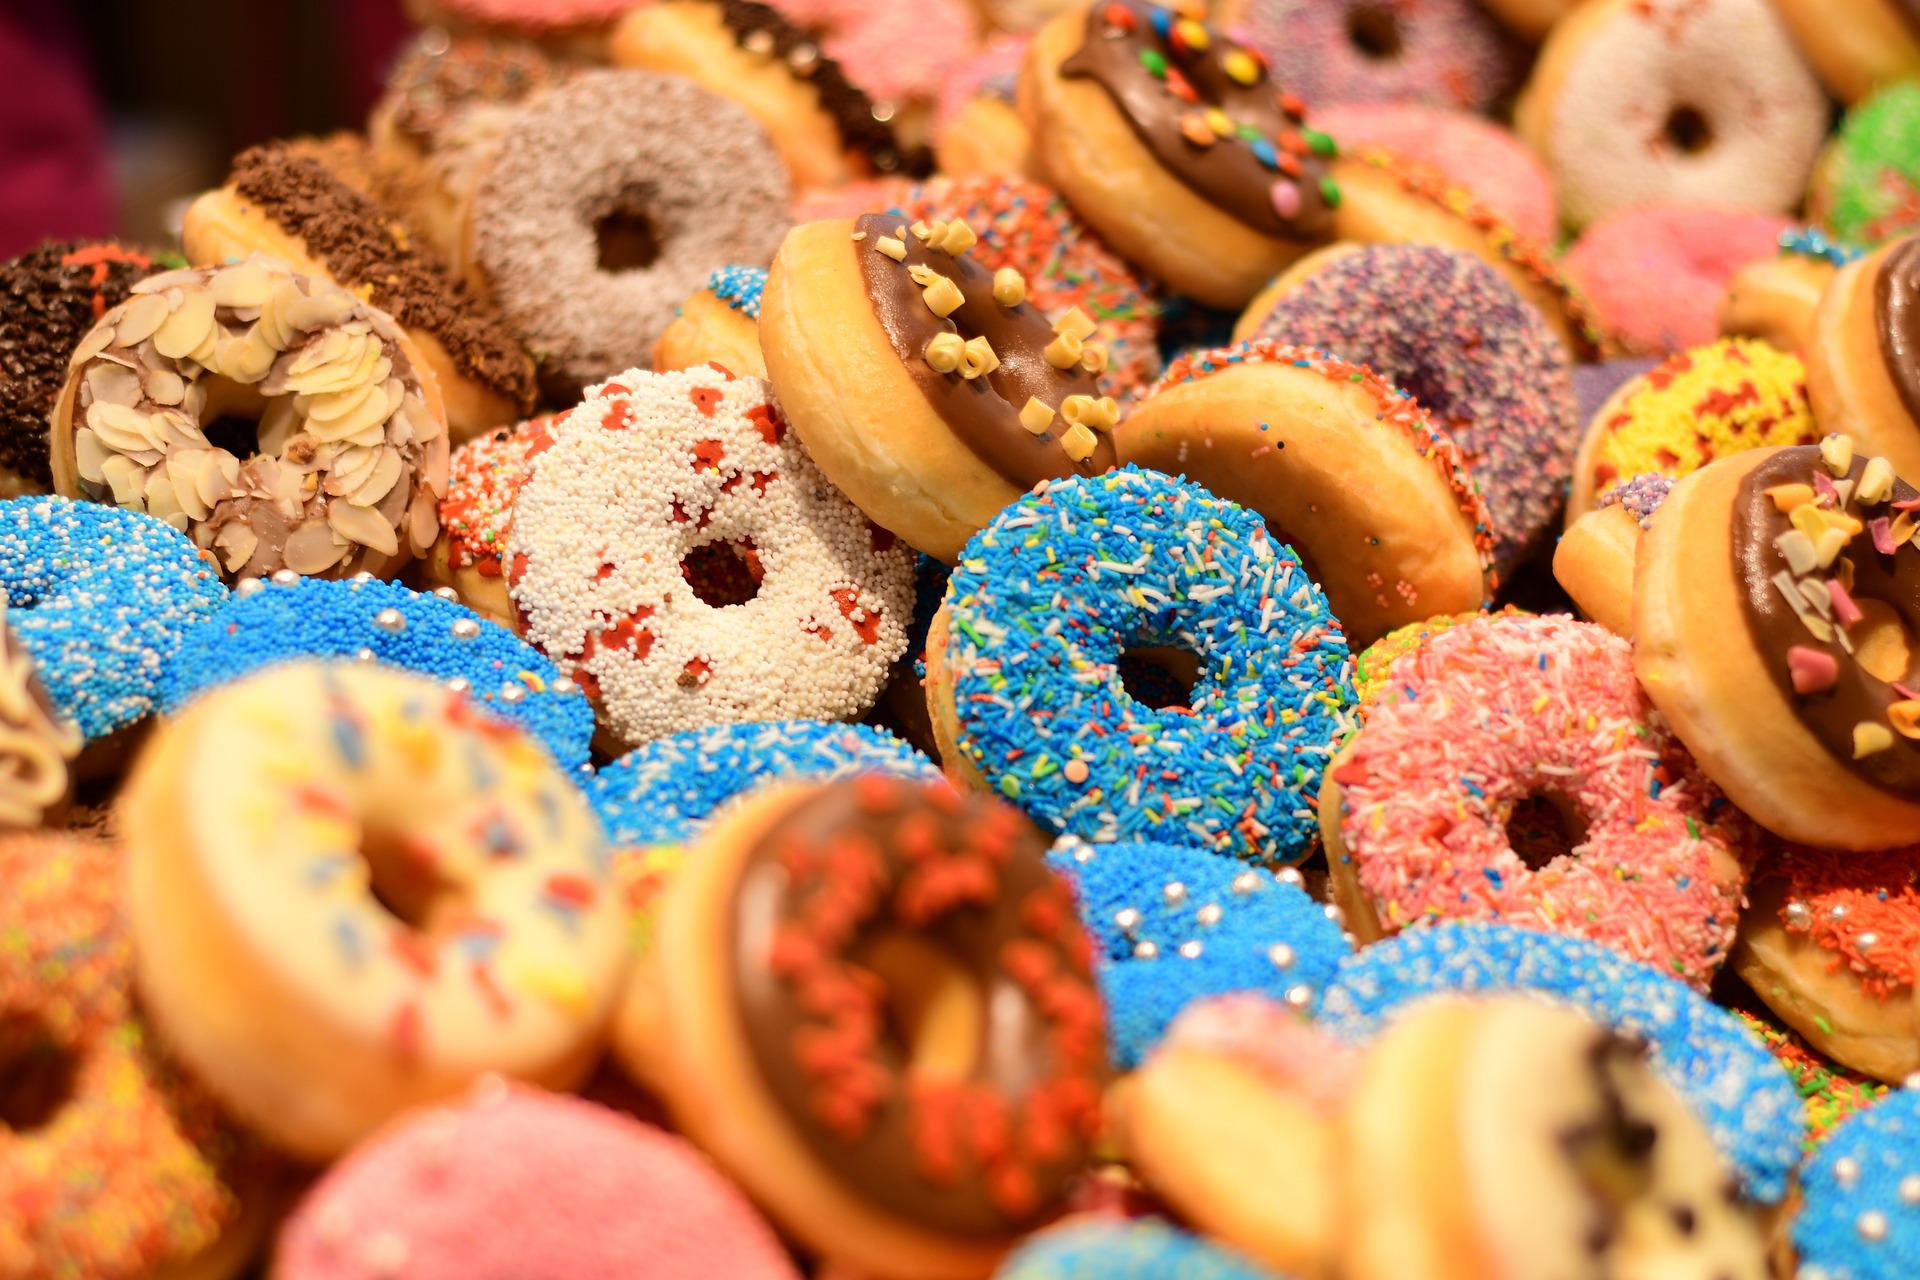 Buy donuts in Perth